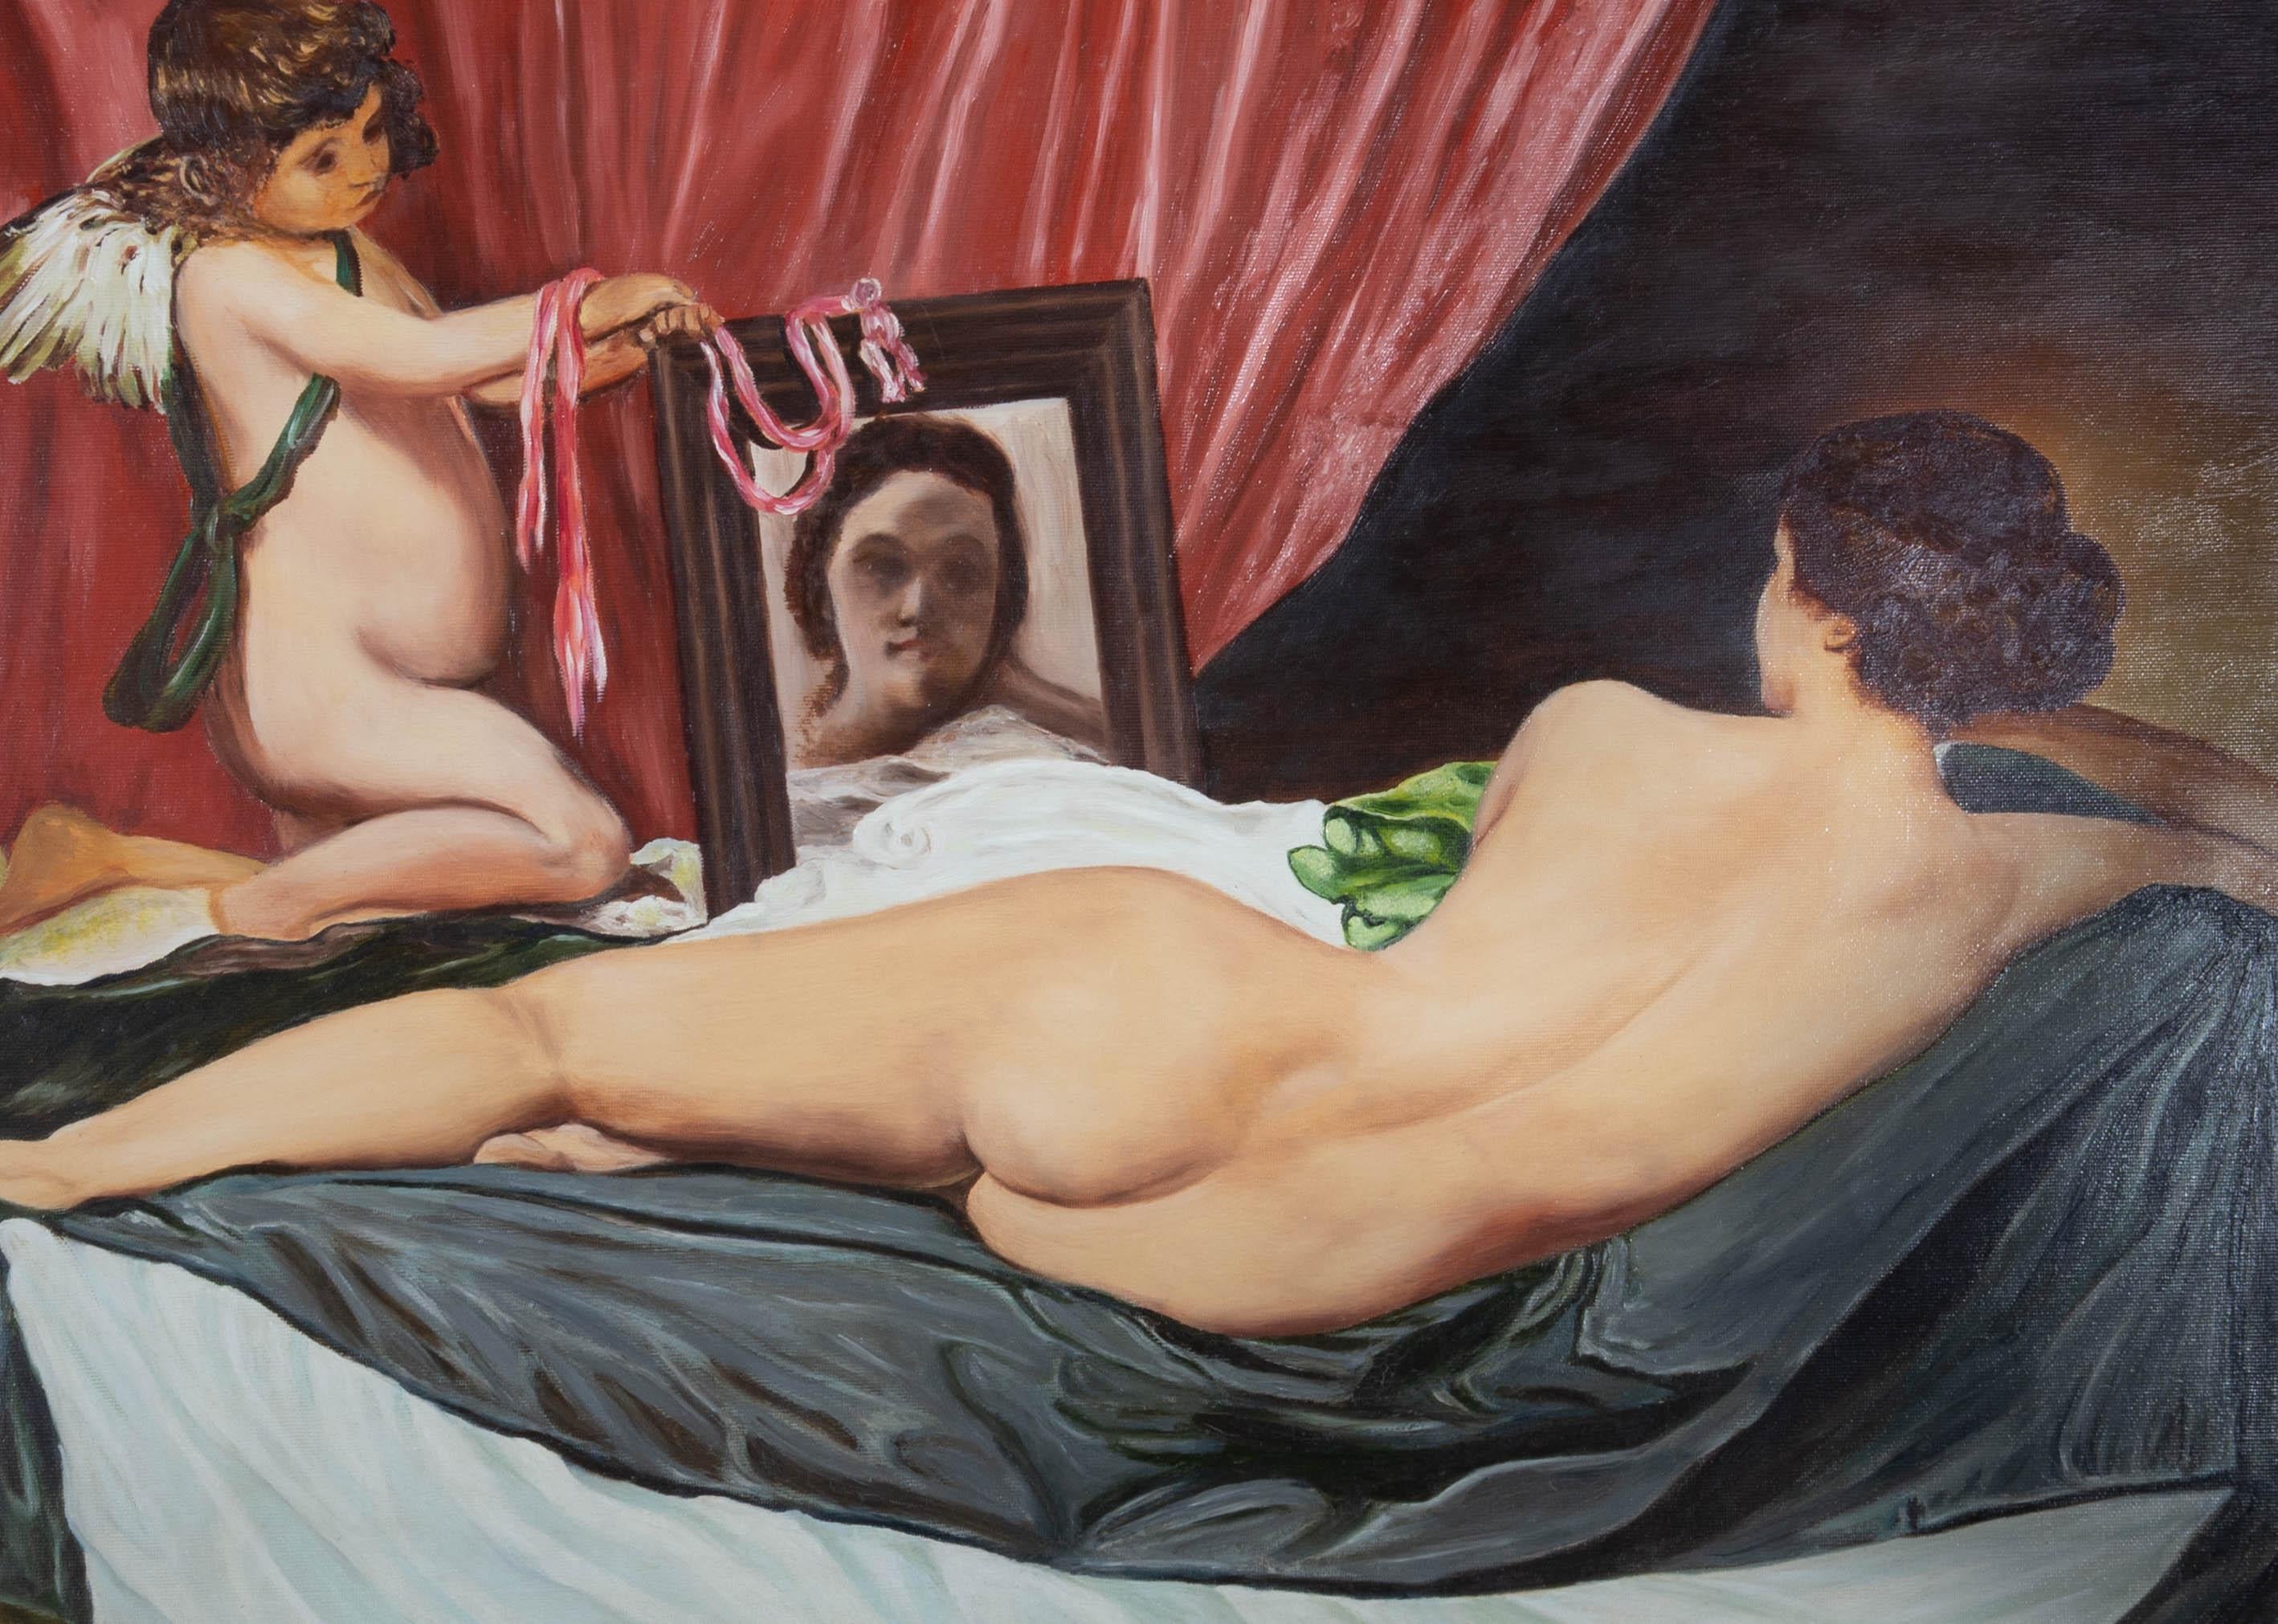 Bomior nach Diego Velazquez (1599-1660) - 1974 Öl, Rokeby Venus – Painting von Bomior after Diego Velazquez